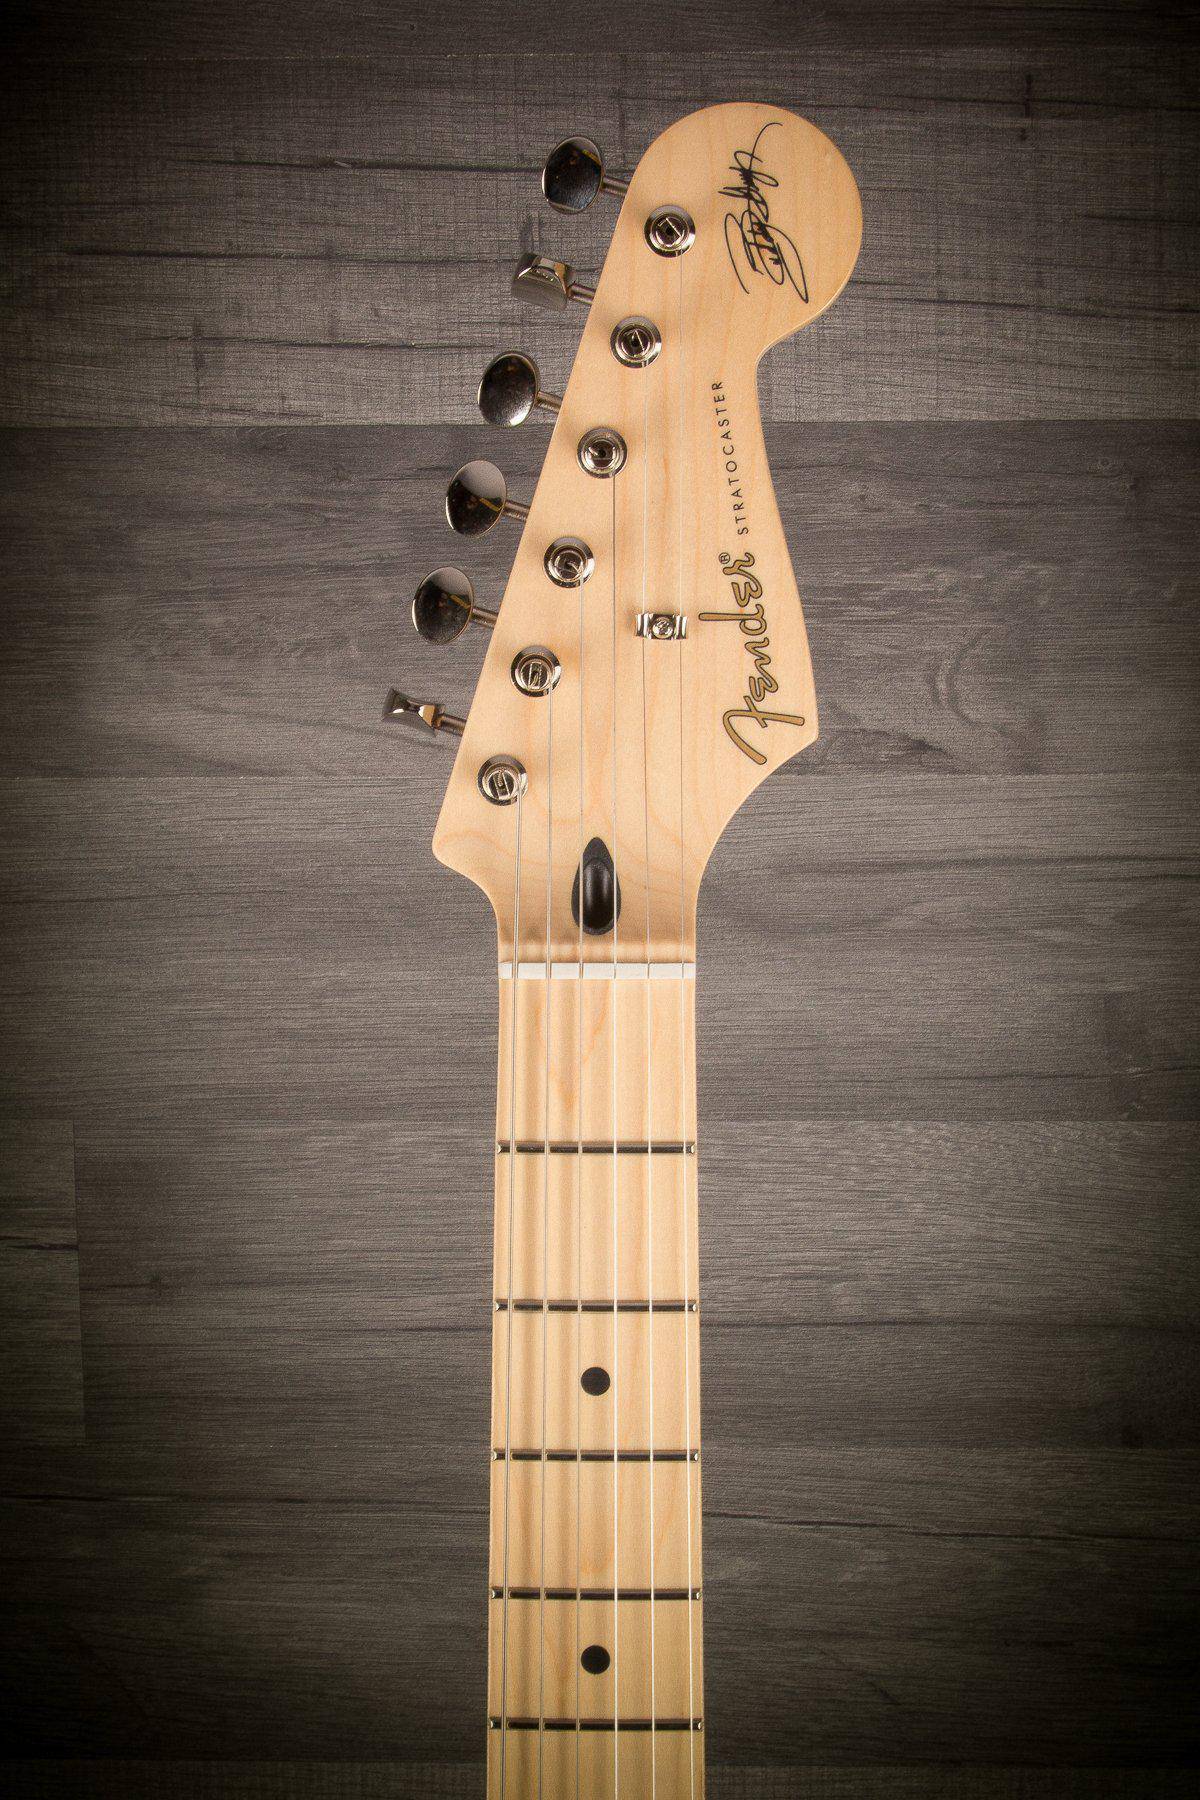 Fender Buddy Guy Polka Dot Stratocaster MN - Black/White Dots - MusicStreet